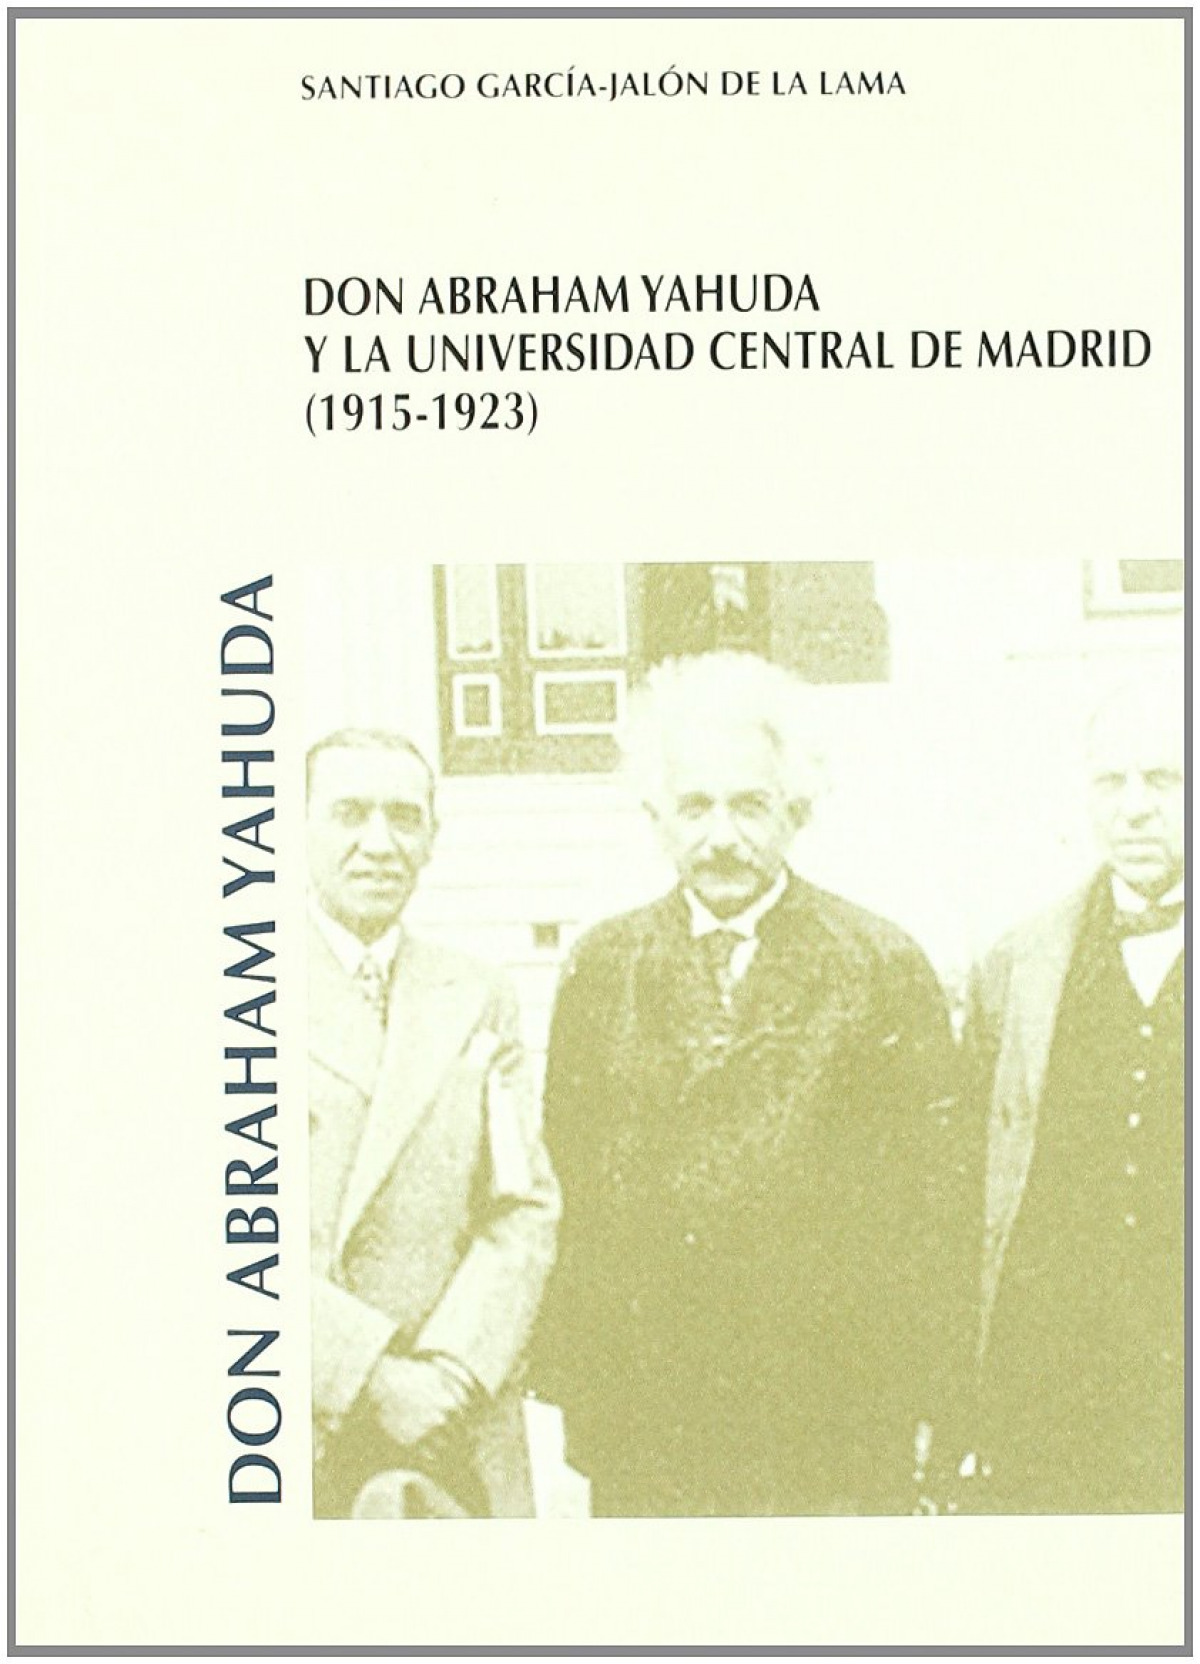 Don Abraham Yahuda y la Universidad Central de Madrid (1915-1923) - García-Jalón de la Lama, Santiago